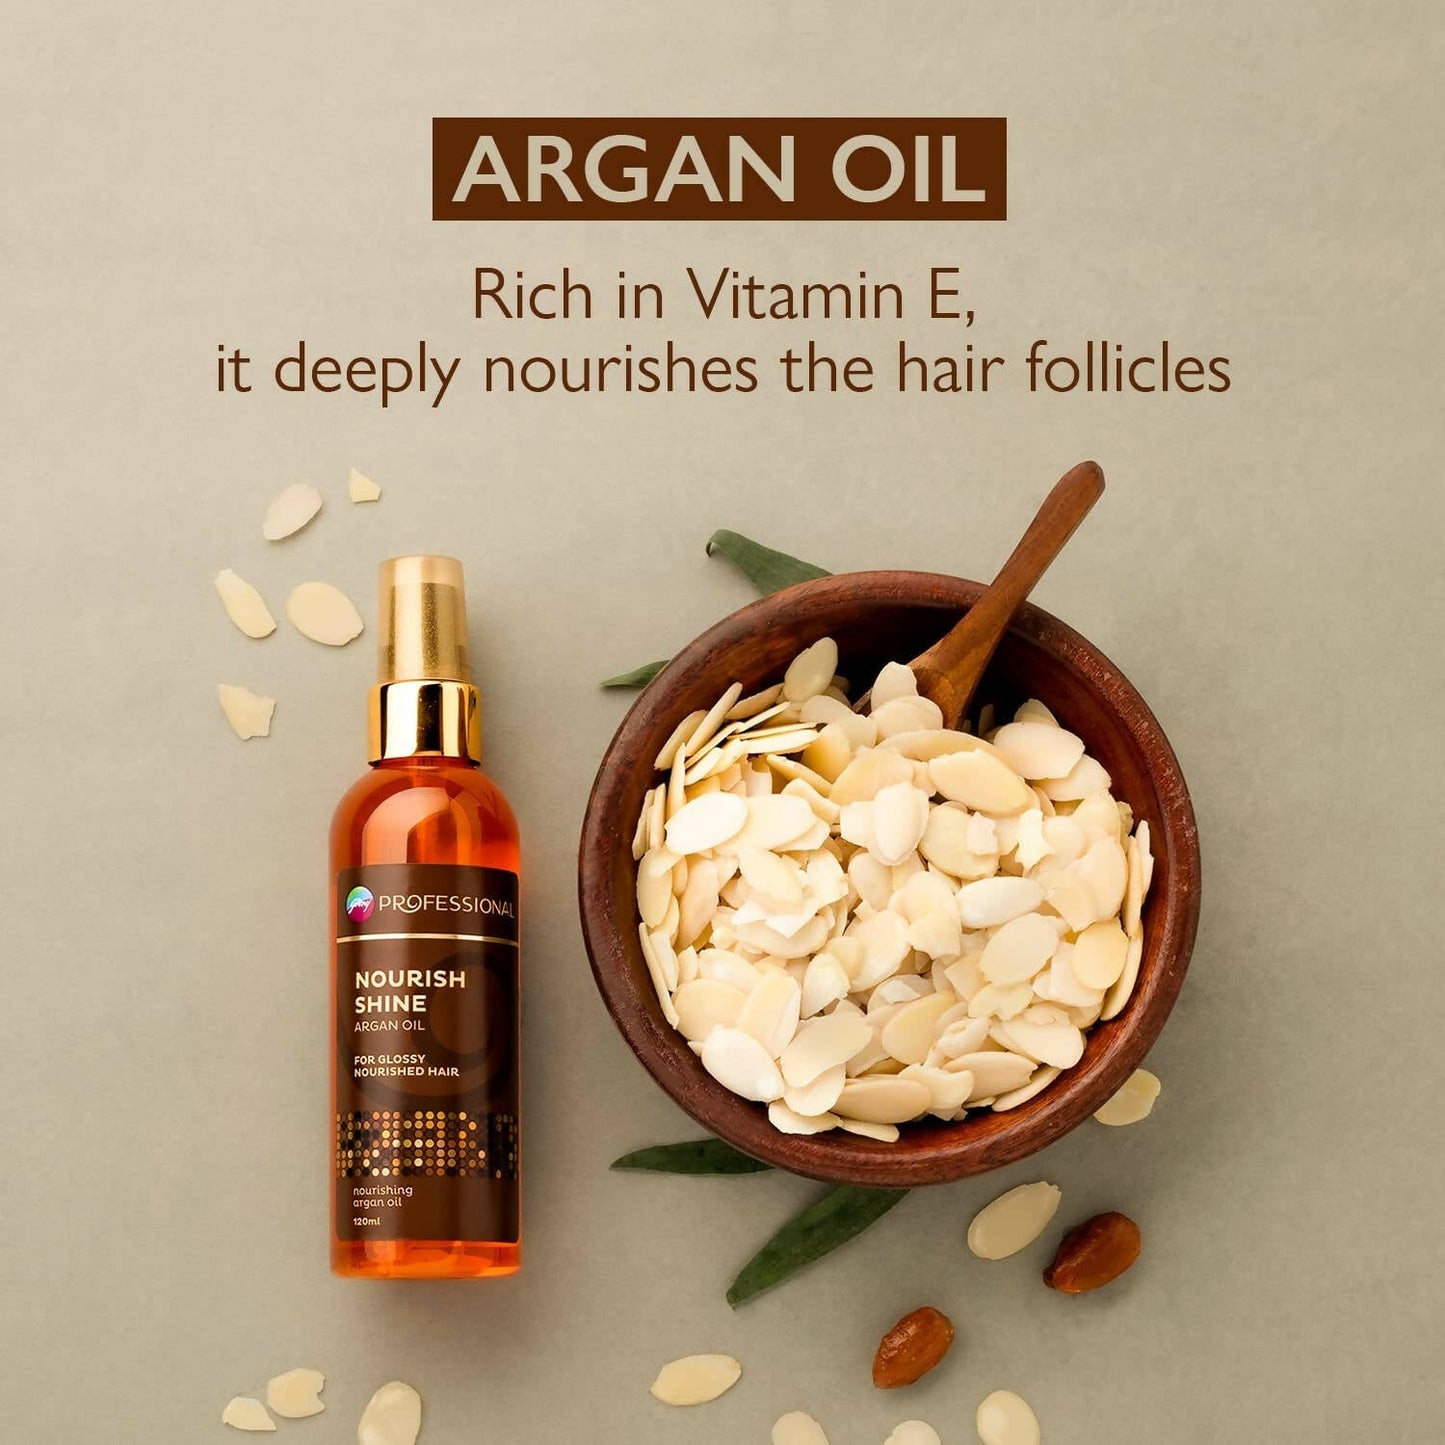 Godrej Professional Nourish Shine Argan Oil Hair Serum